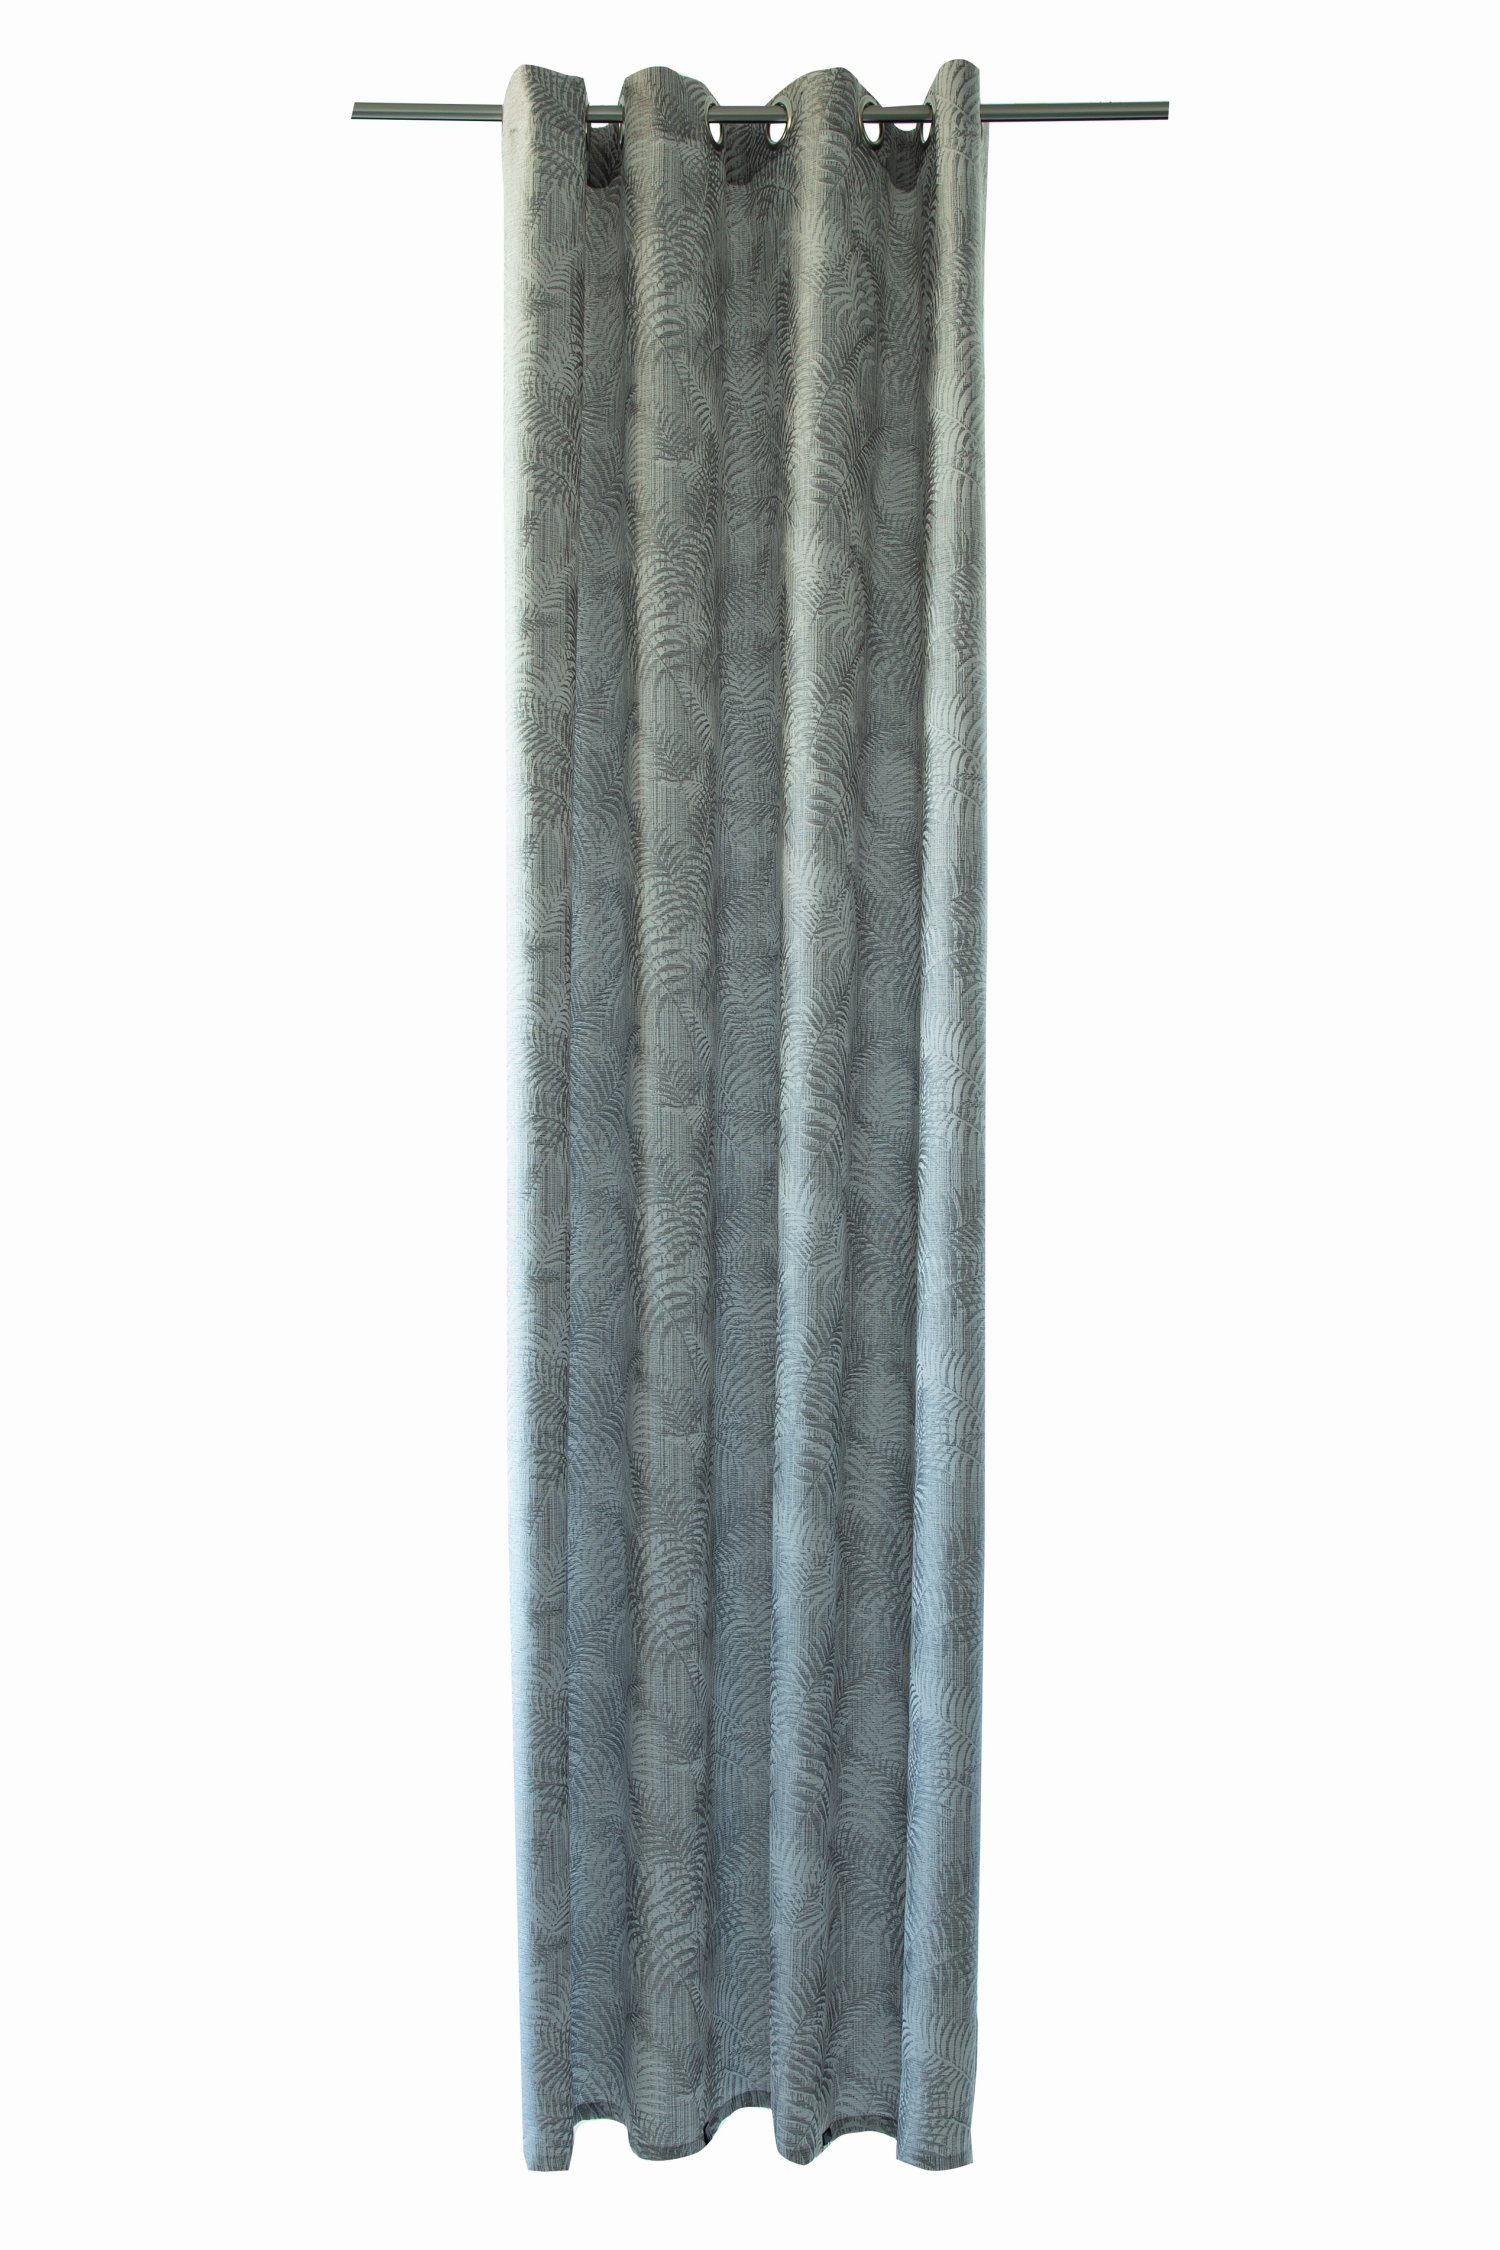 Vorhang, silver Ösenschal 140x245cm Lichtschutz, Bali HOMING, Farbe: